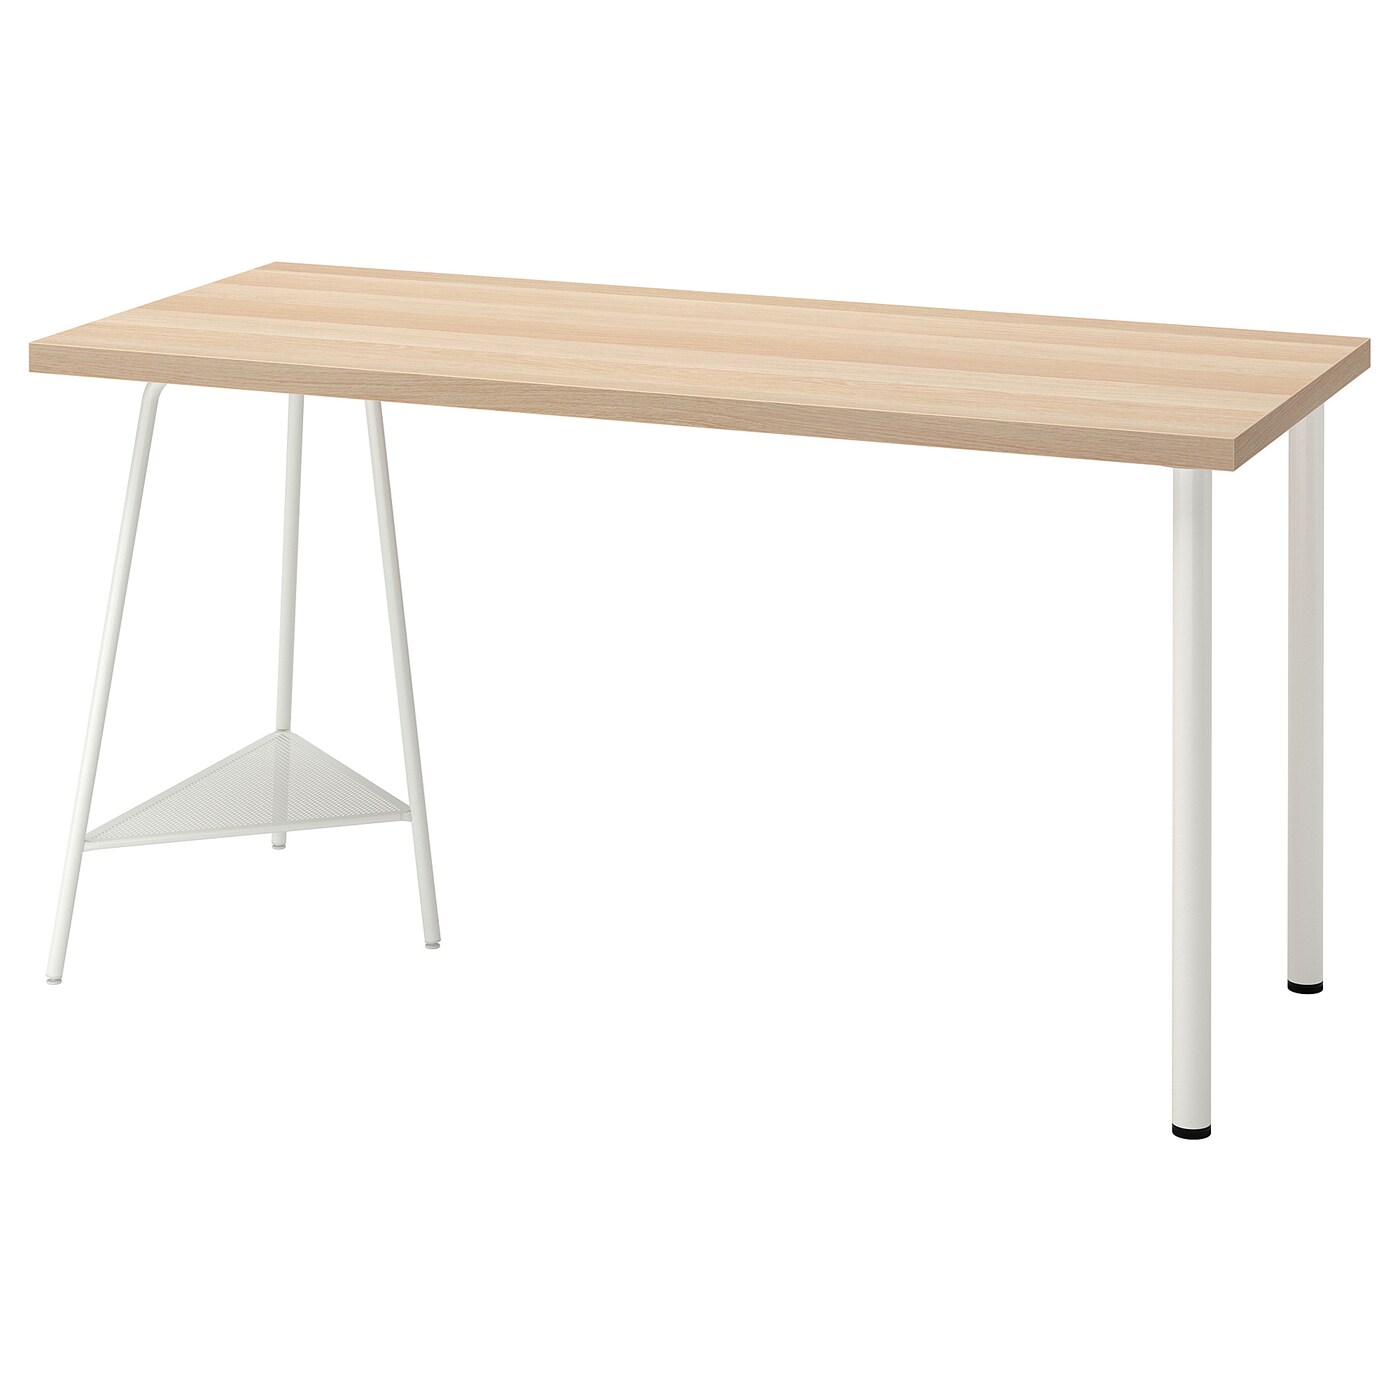 Письменный стол - IKEA LAGKAPTEN/TILLSLAG, 140х60 см, под беленый дуб/белый, ЛАГКАПТЕН/ТИЛЛЬСЛАГ ИКЕА